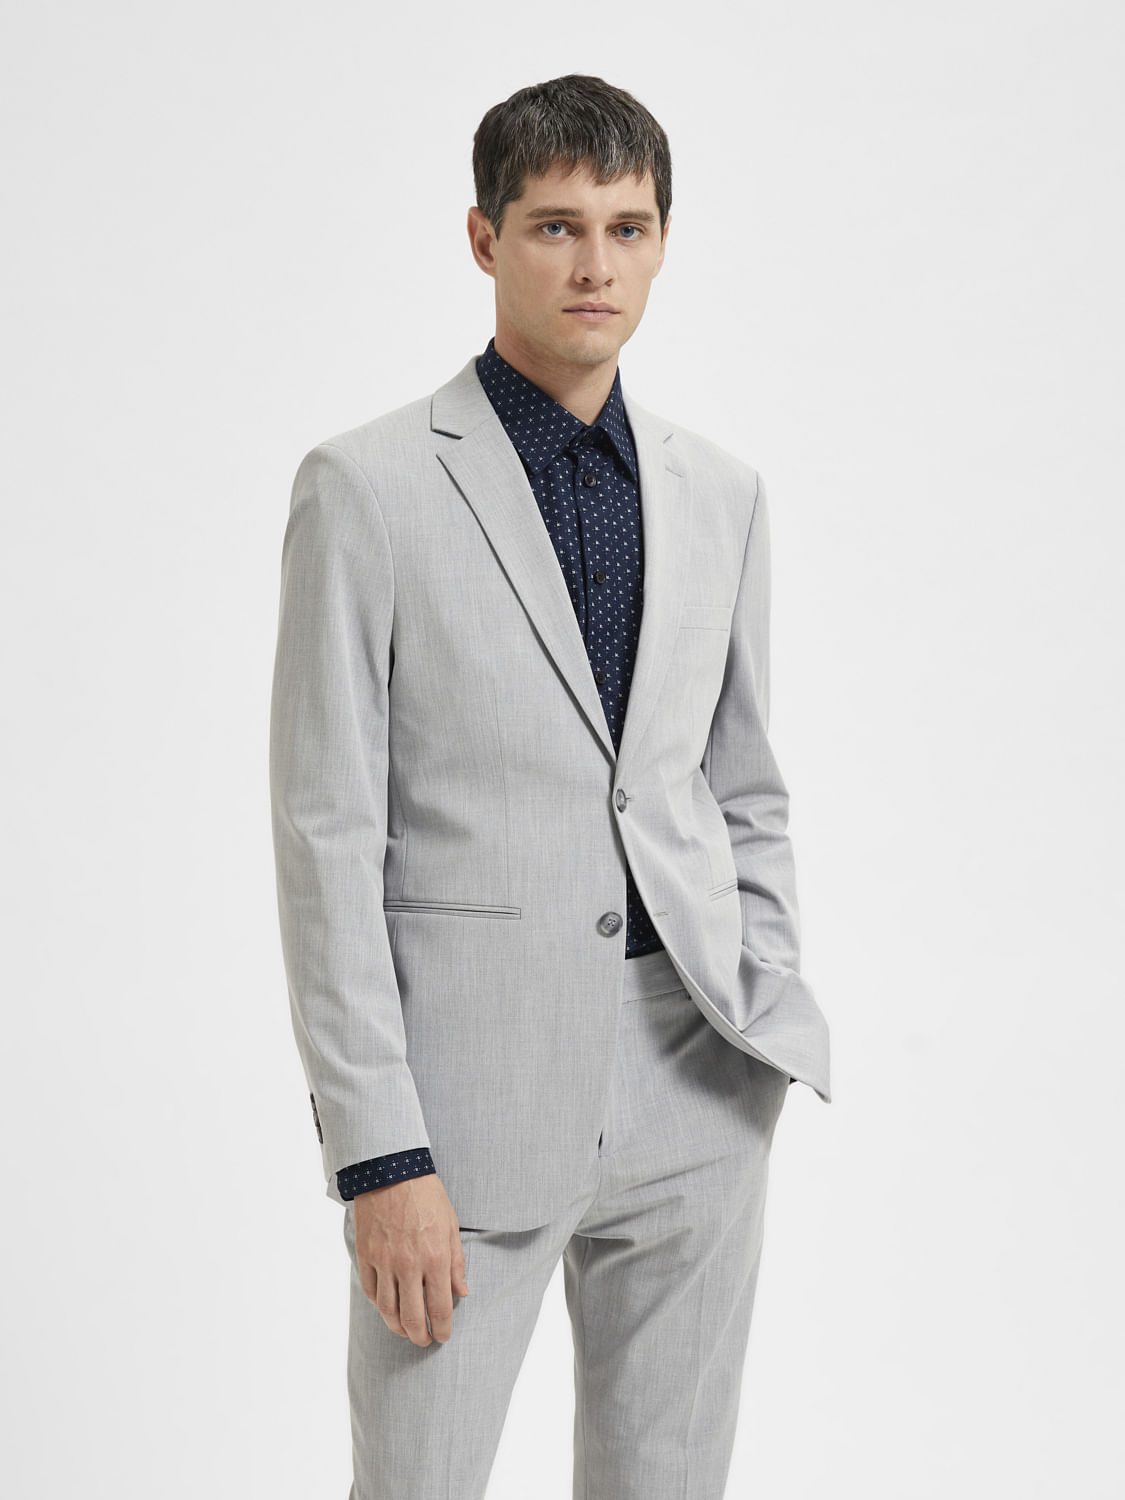 Slim Fit Linen Suit Pants - Light beige melange - Men | H&M US